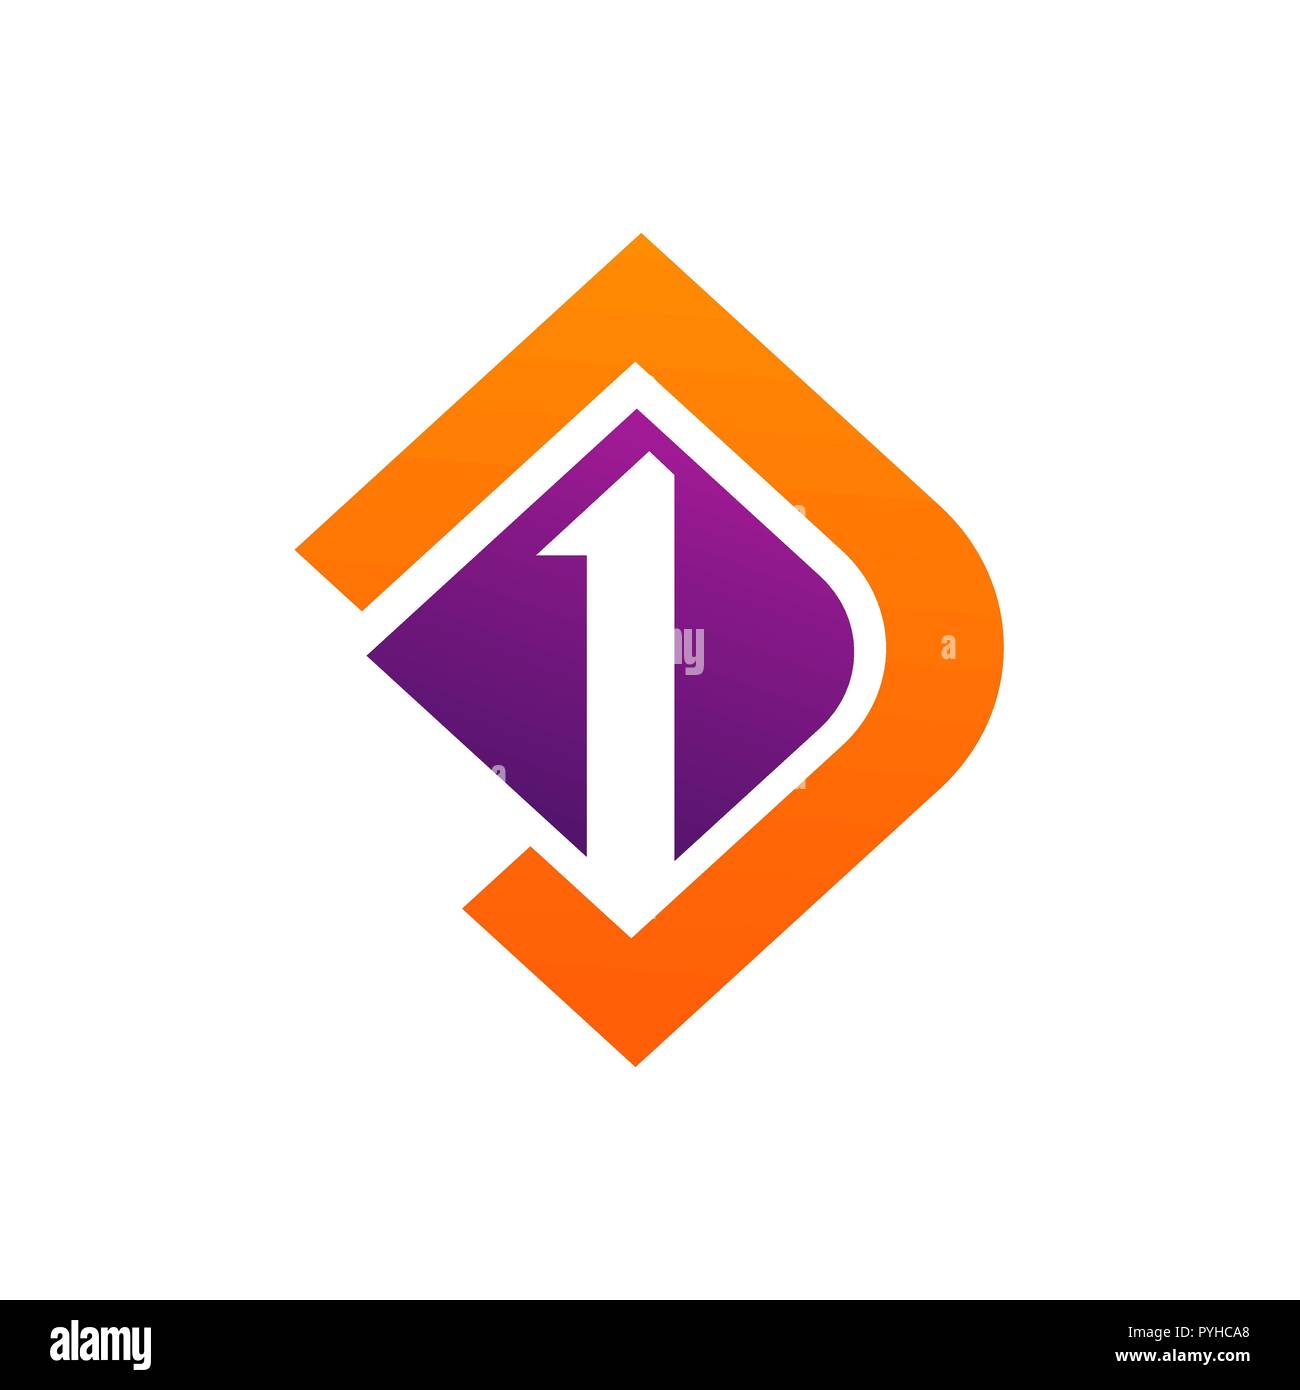 Tjeukemeer Buchstabe d und Nummer eins logo Vektor Stock Vektor